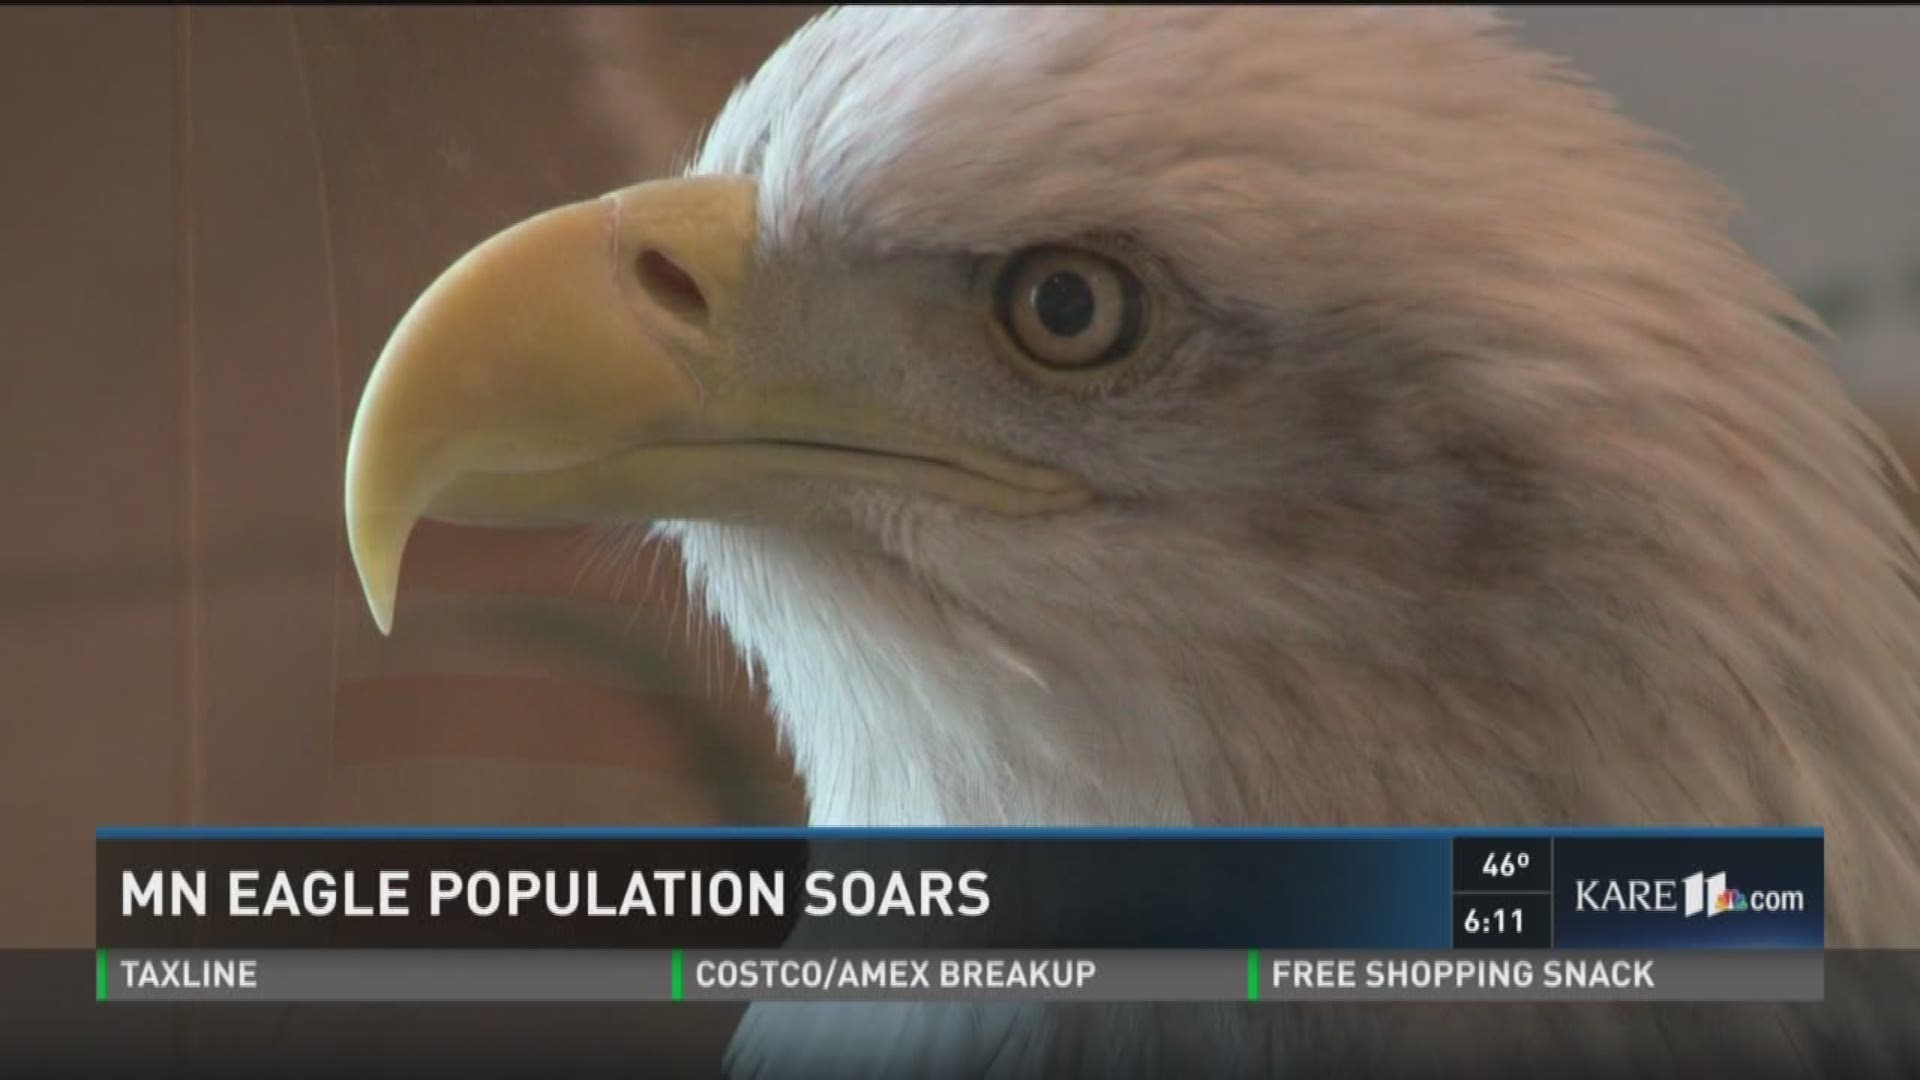 MN eagle population soars